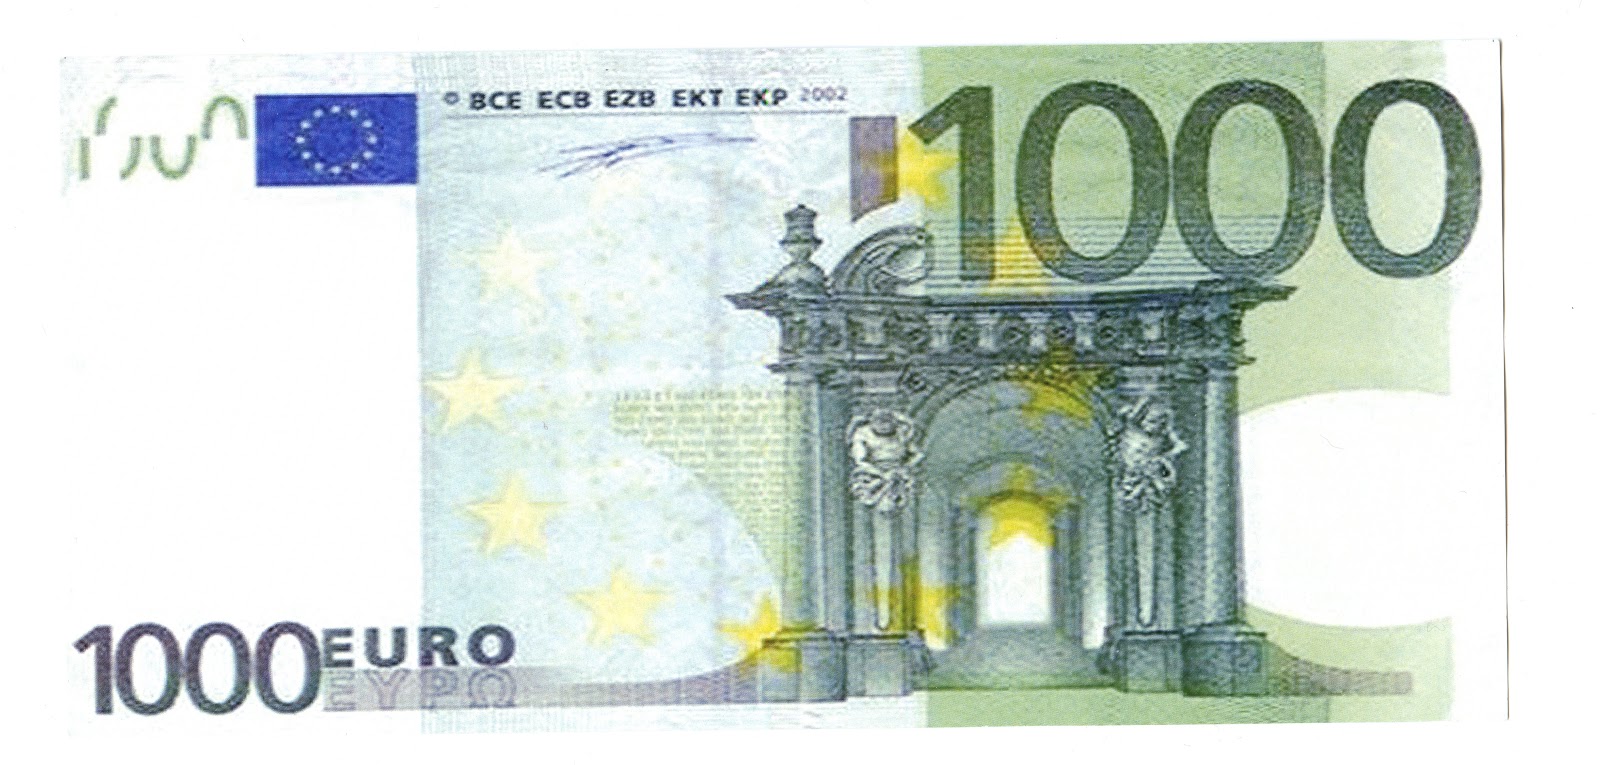 100 euro schein zum drucken hylenmaddawardscom 1000 schweizer franken note ...